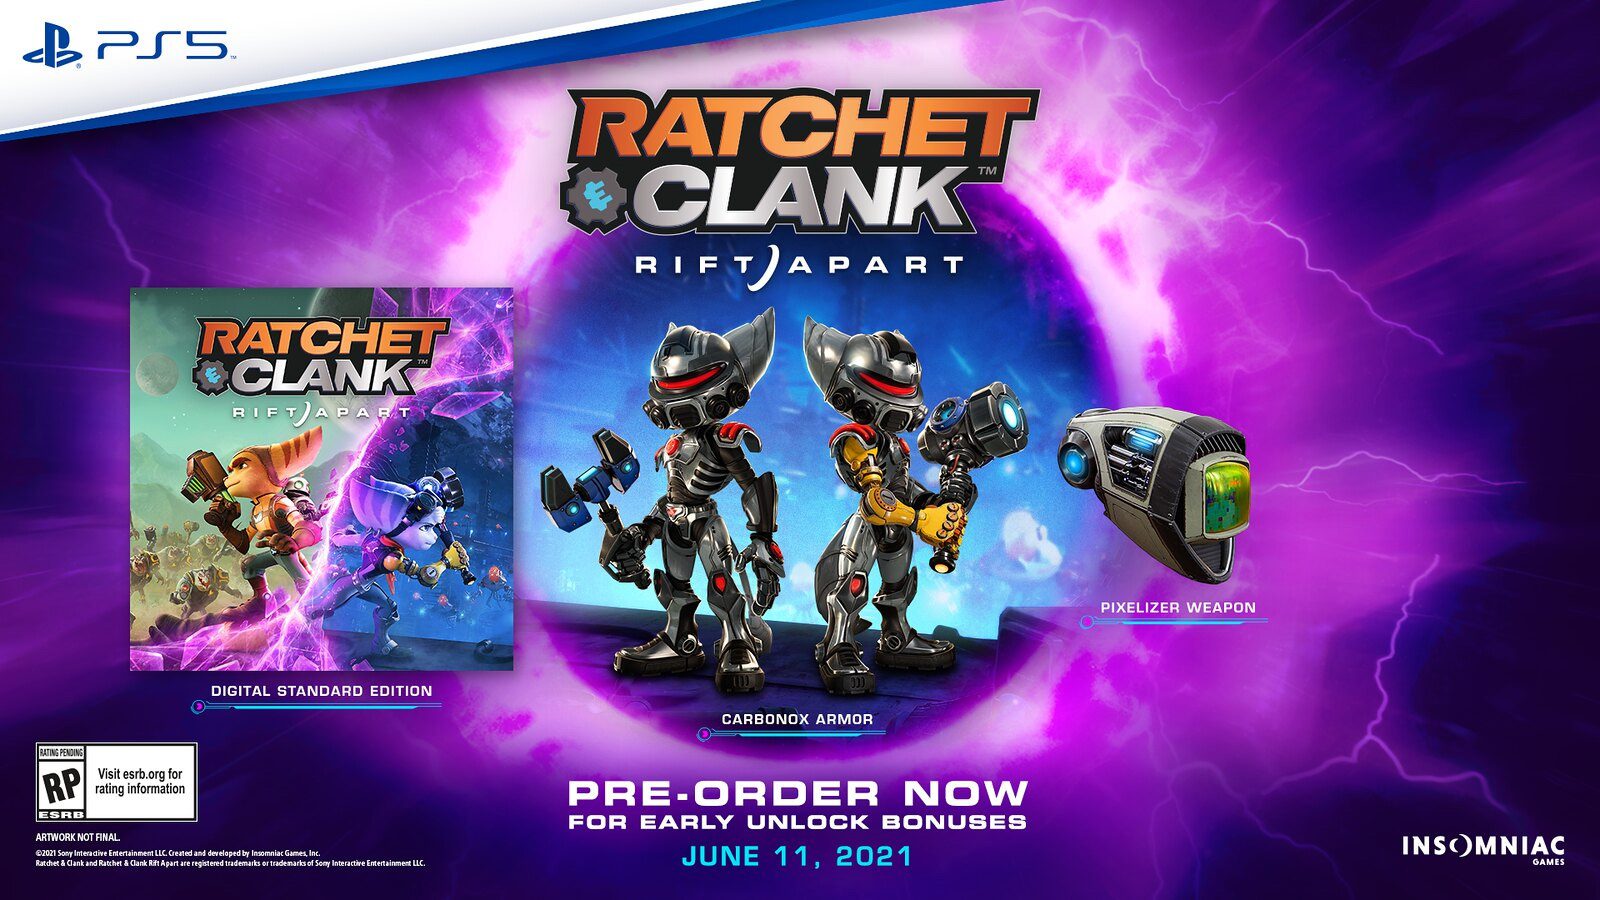 The pre-order bonuses for Ratchet & Clank: Rift Apart